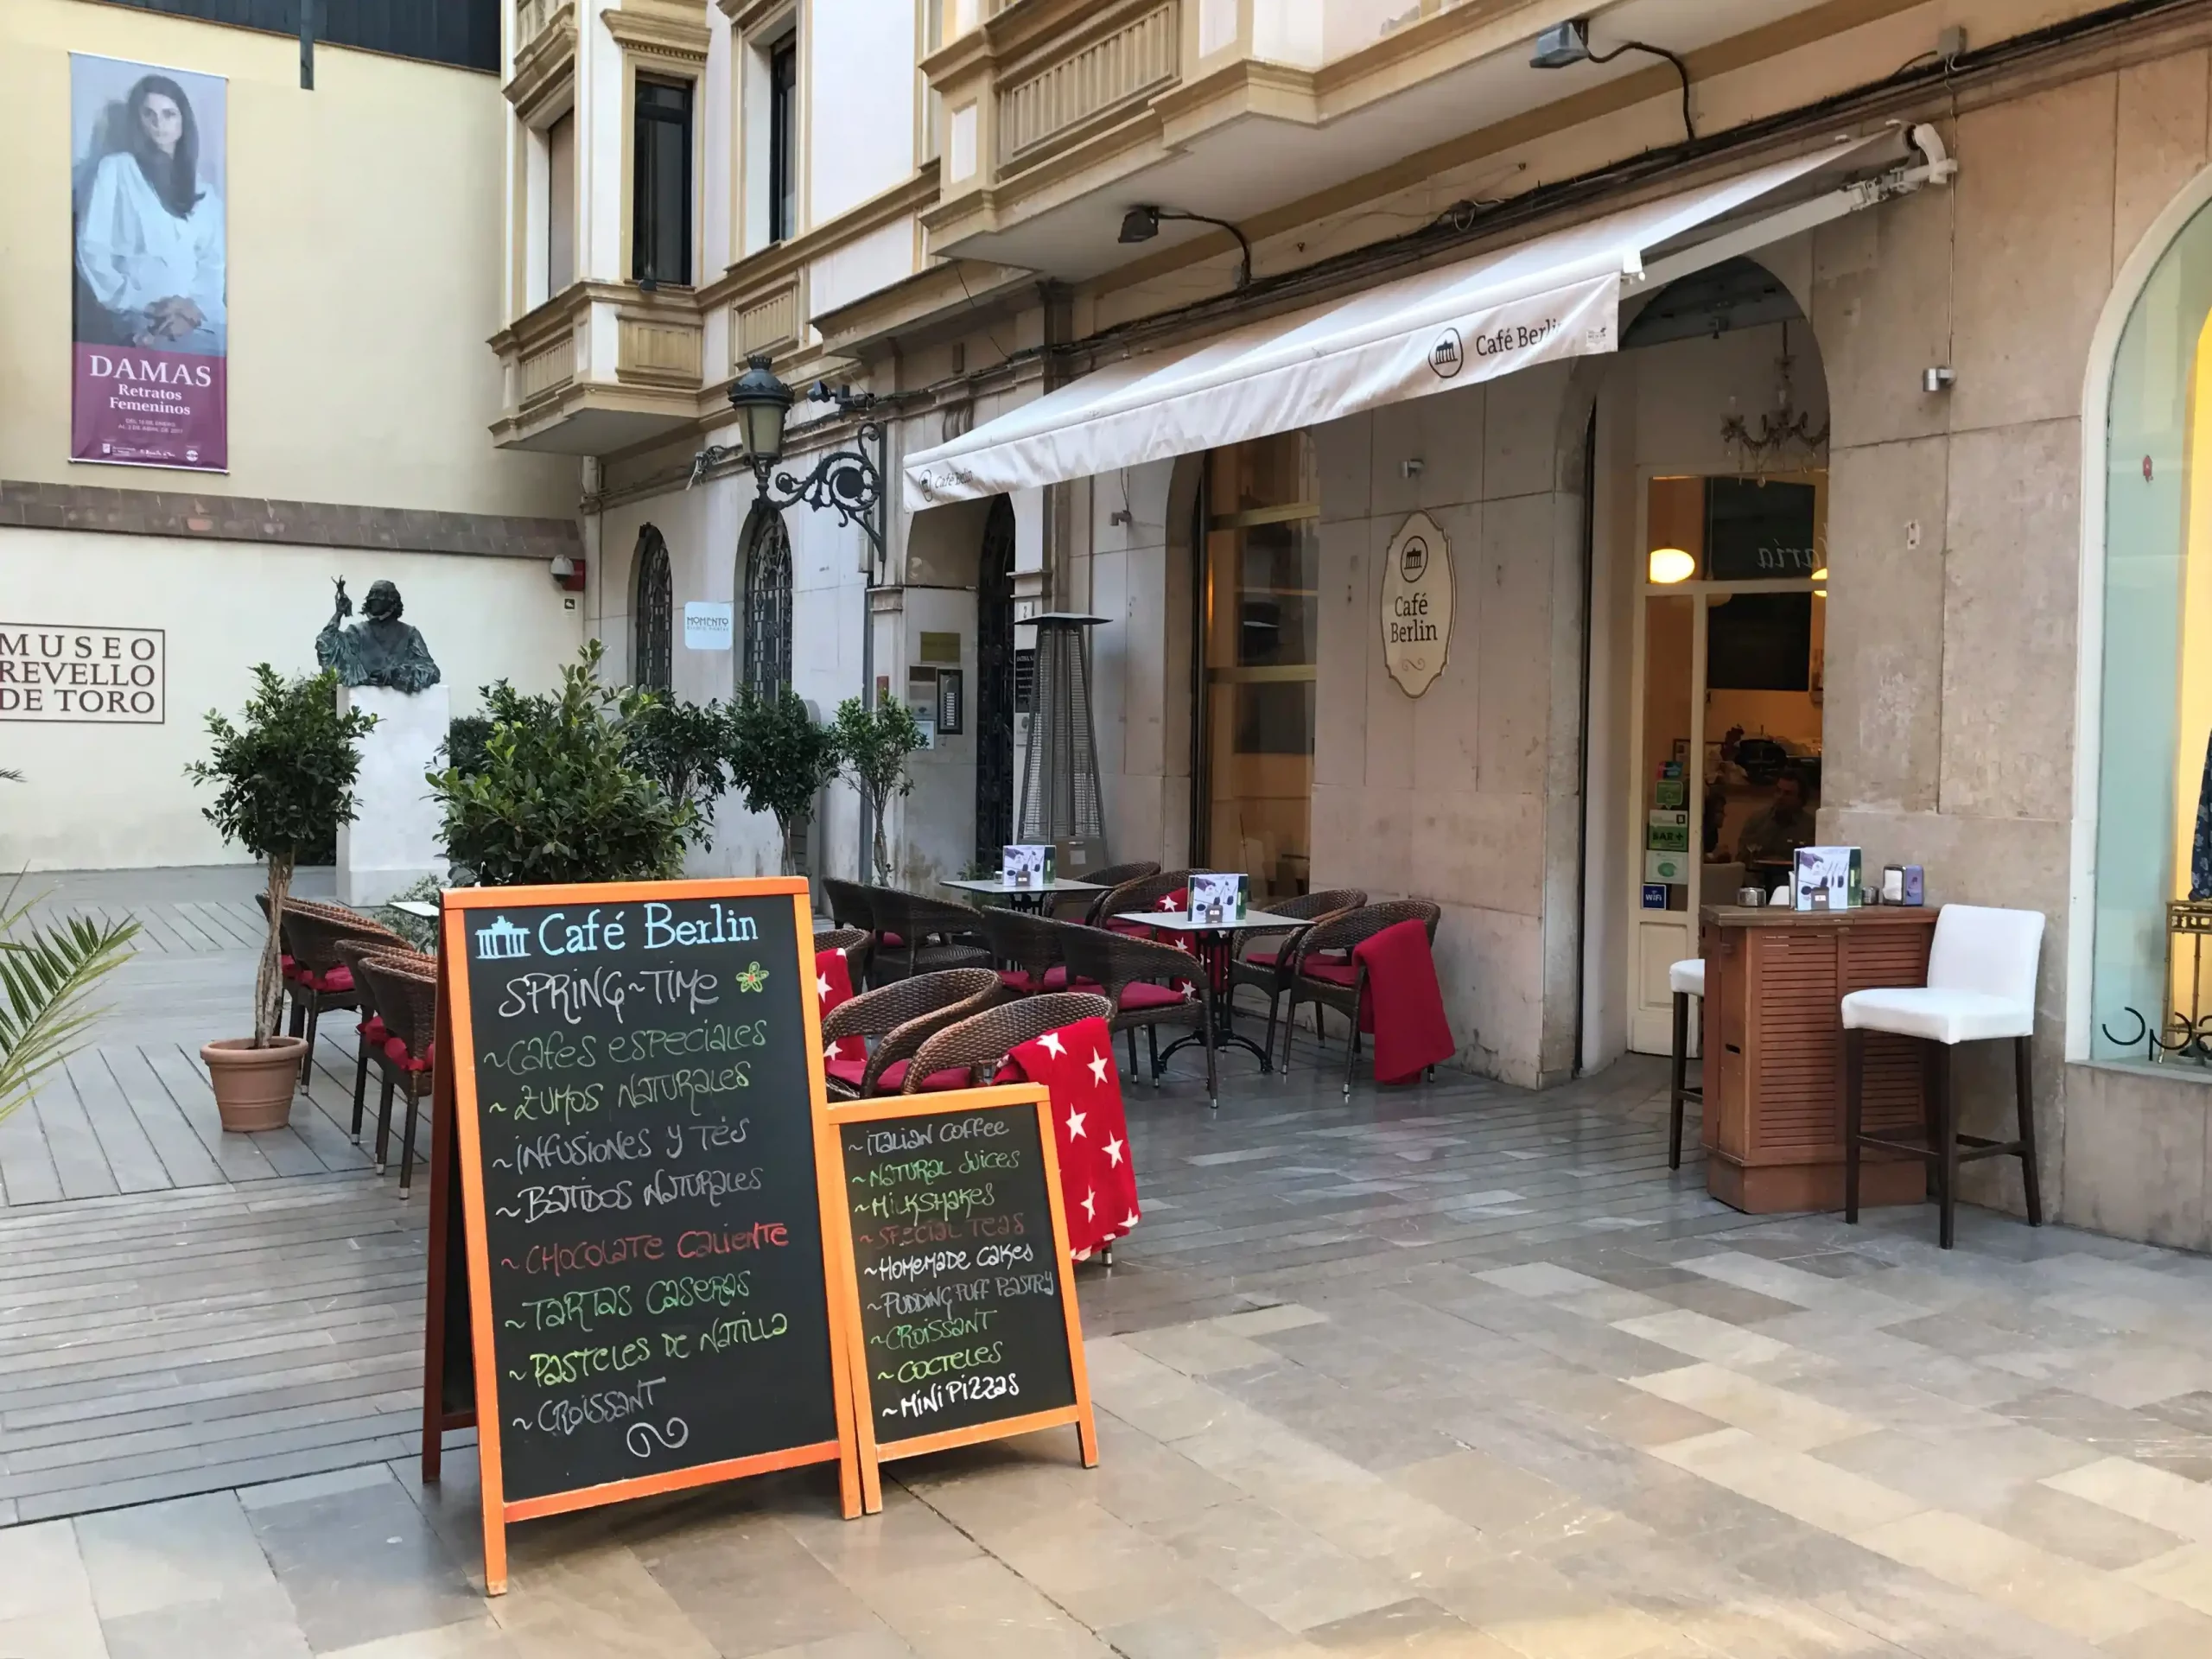 Cafe Berlin in Malaga